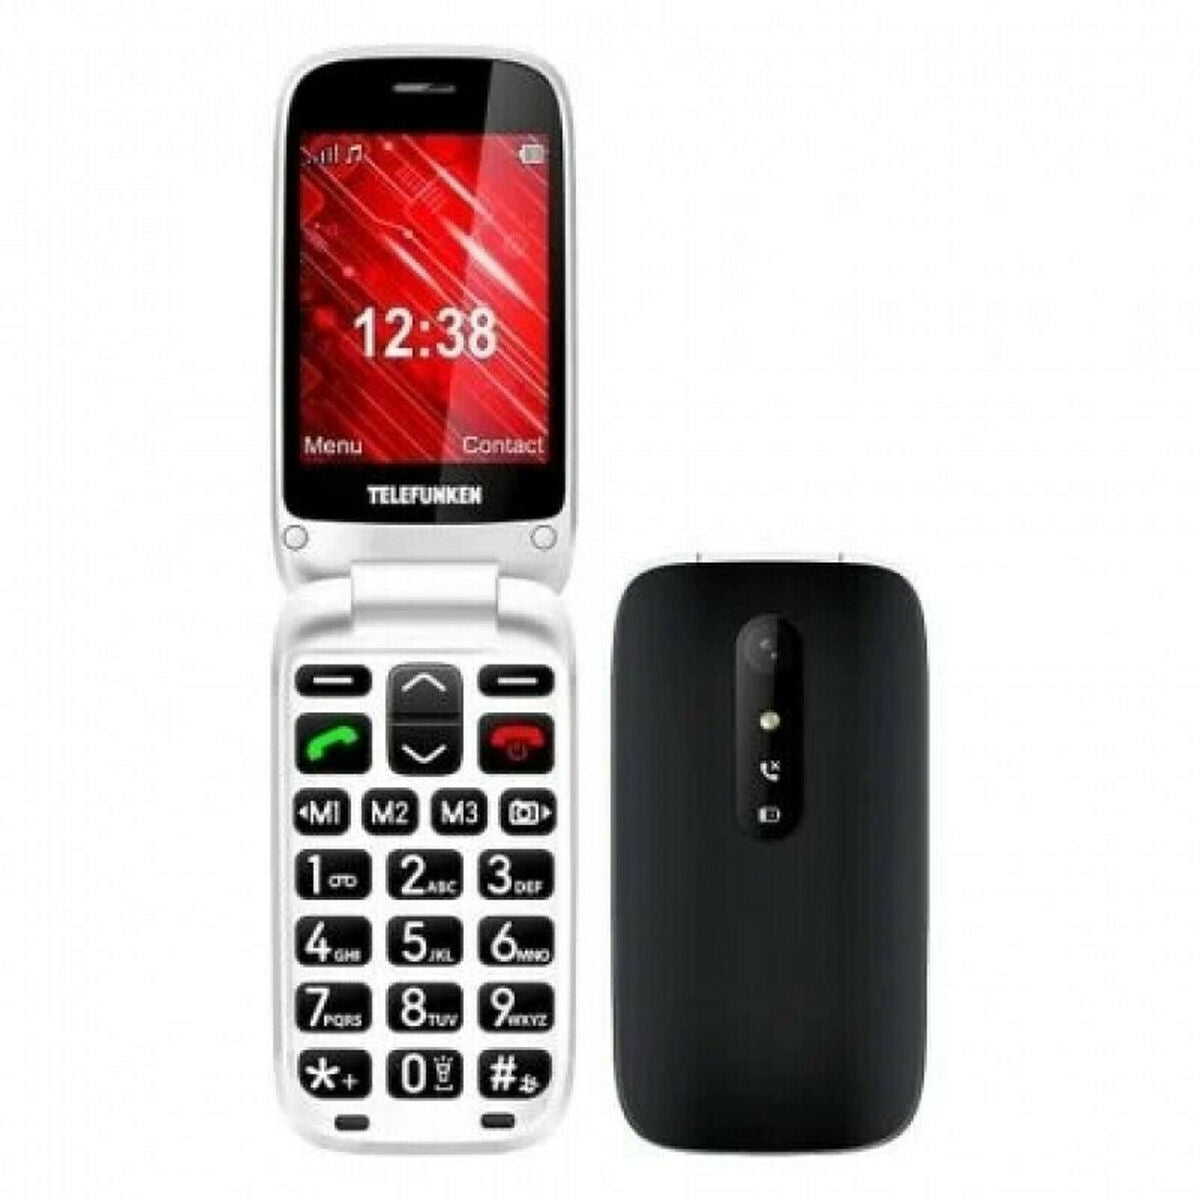 Mobiele Telefoon voor Bejaarden Telefunken S445 32 GB 2,8"